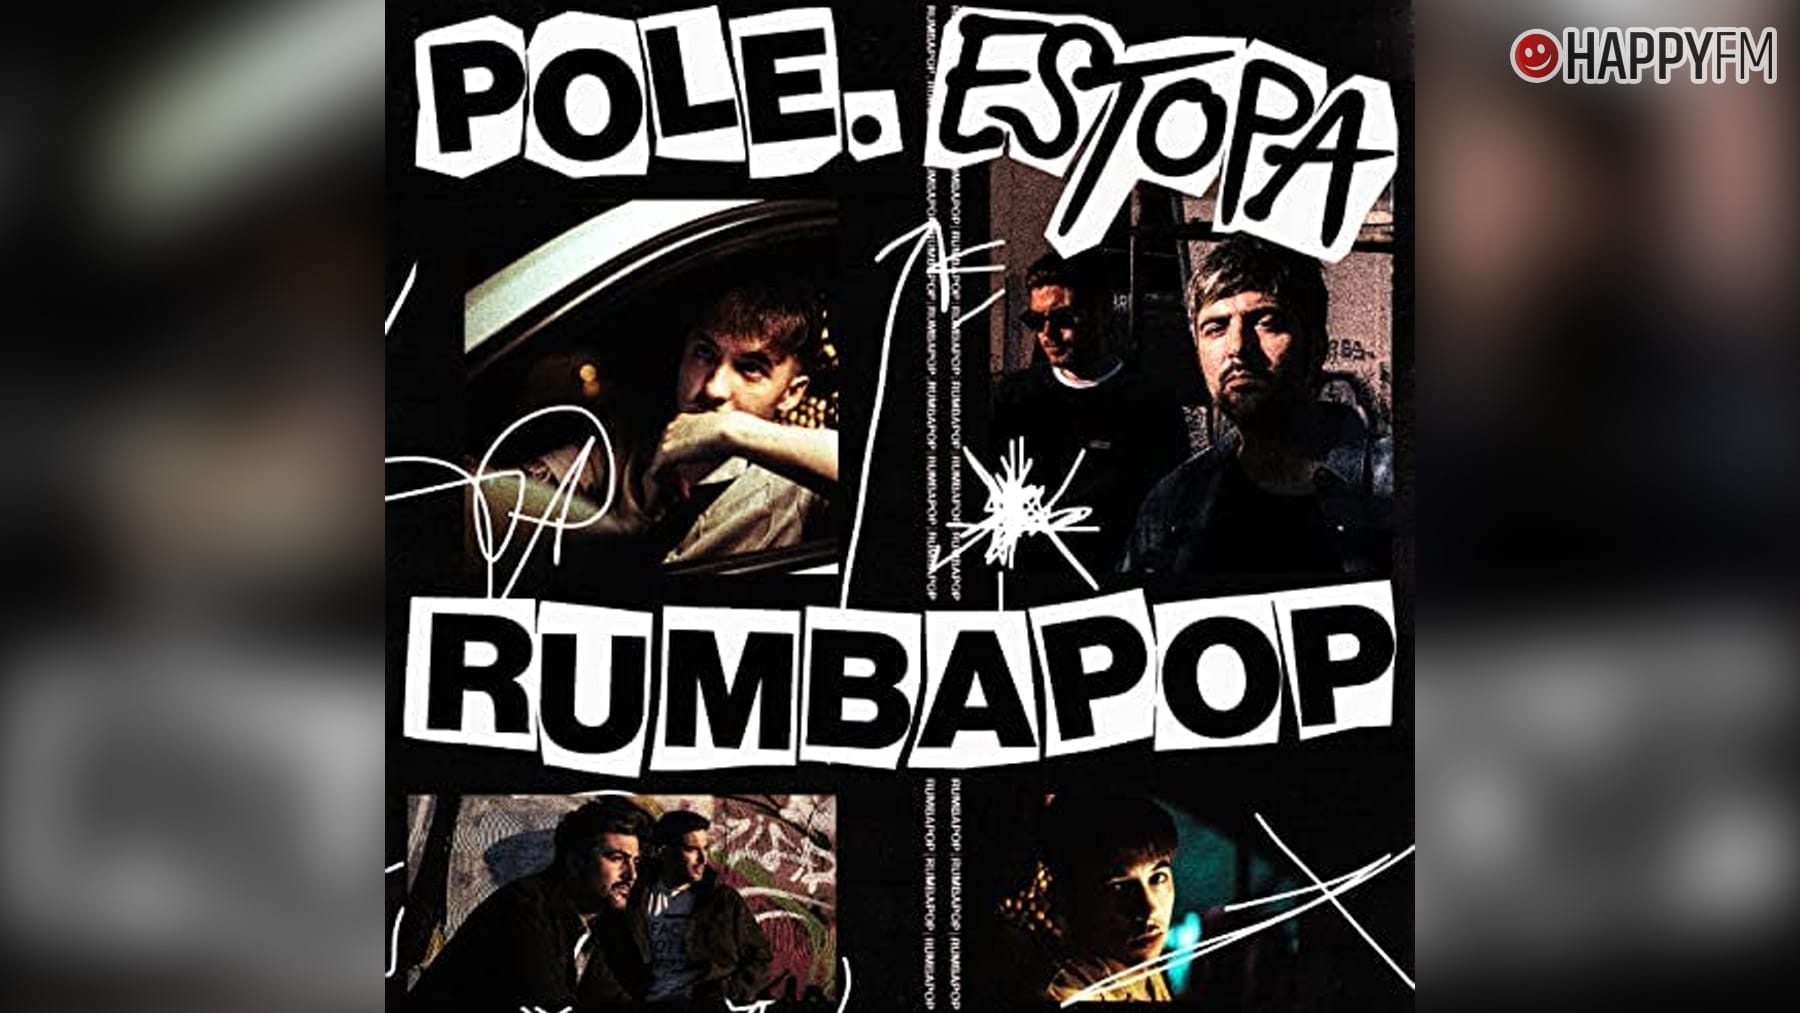 ‘Rumbapop’, de Pole. y Estopa: letra y vídeo